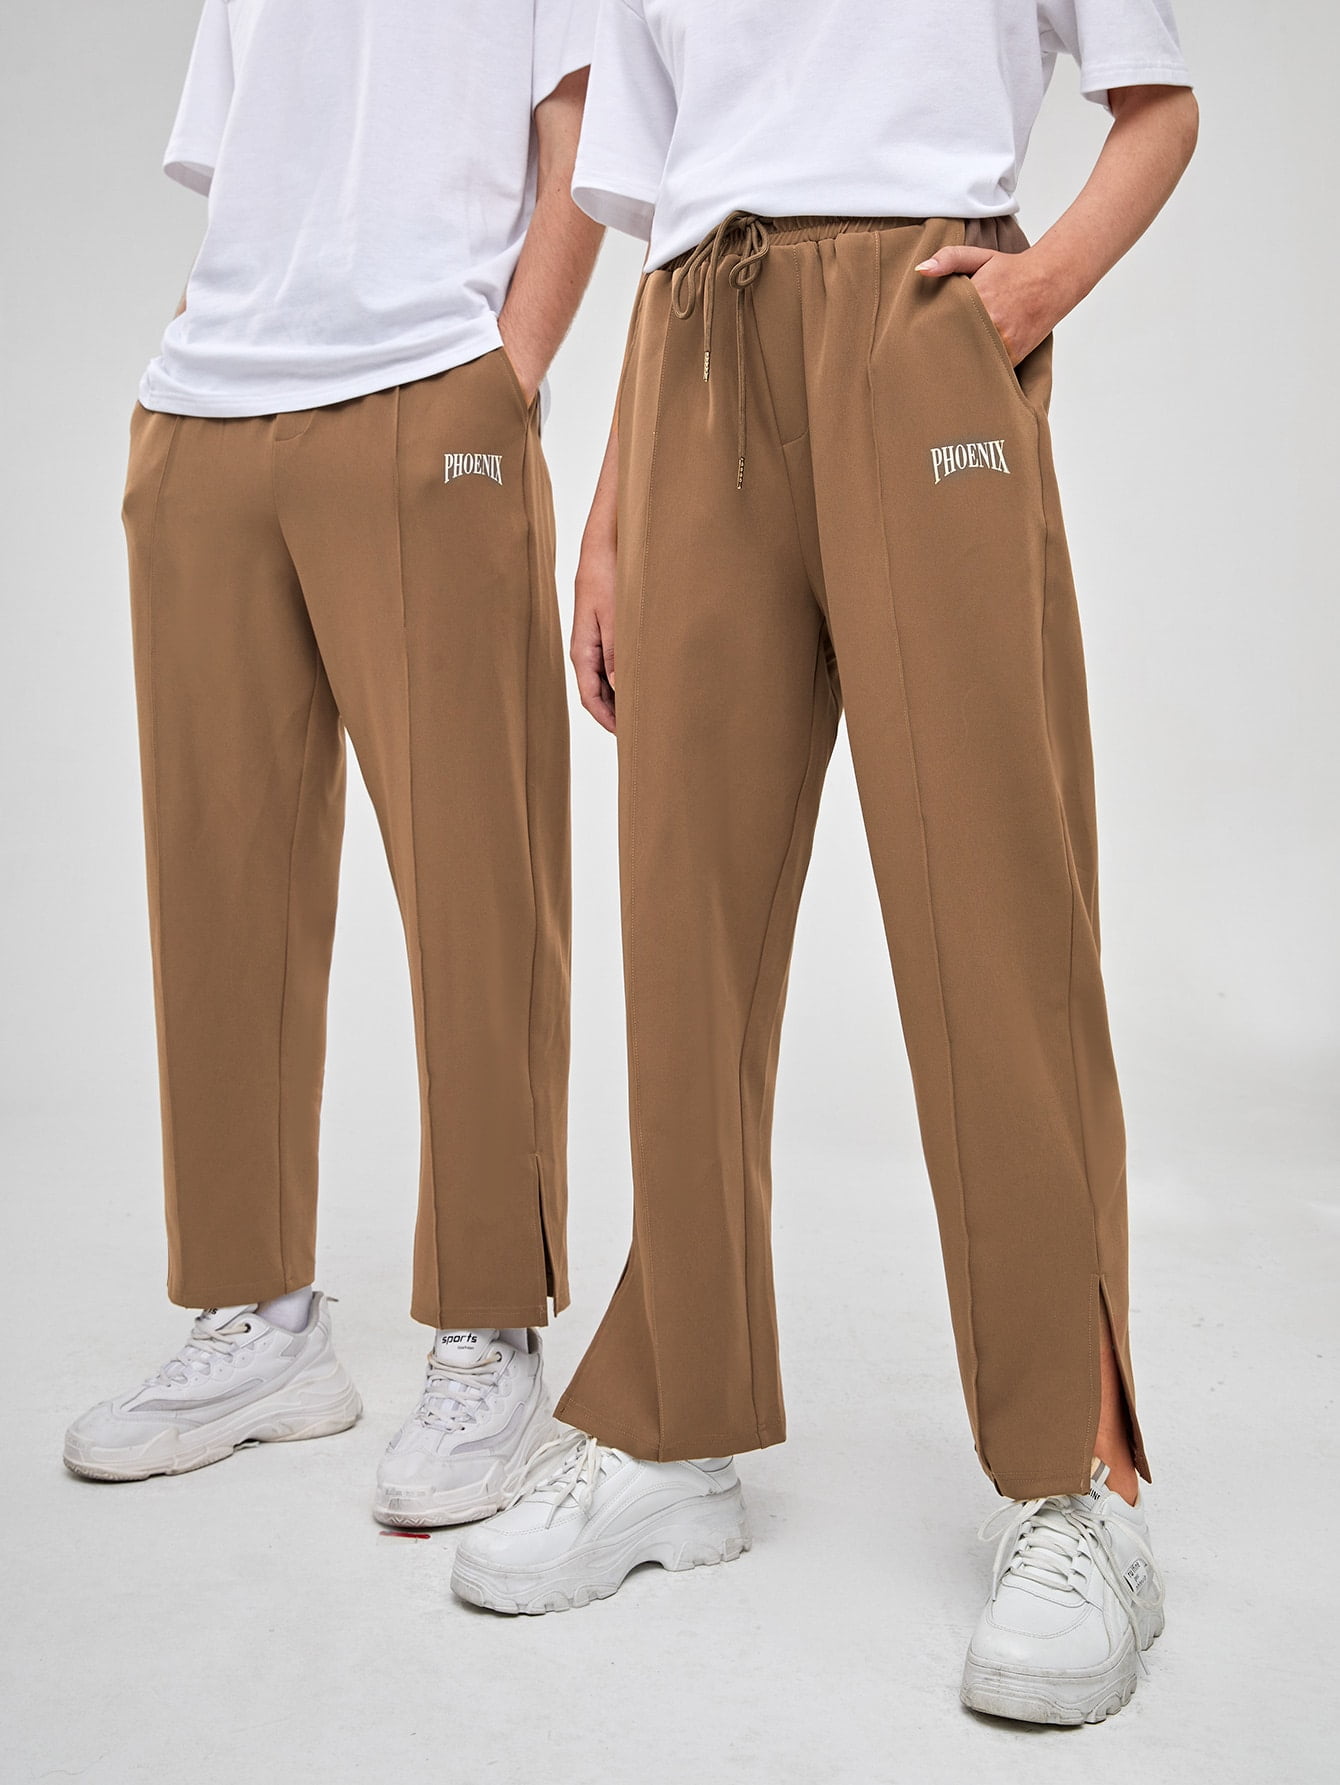 Shorts men pants fold polka dot slim coloured casual new BD-76 